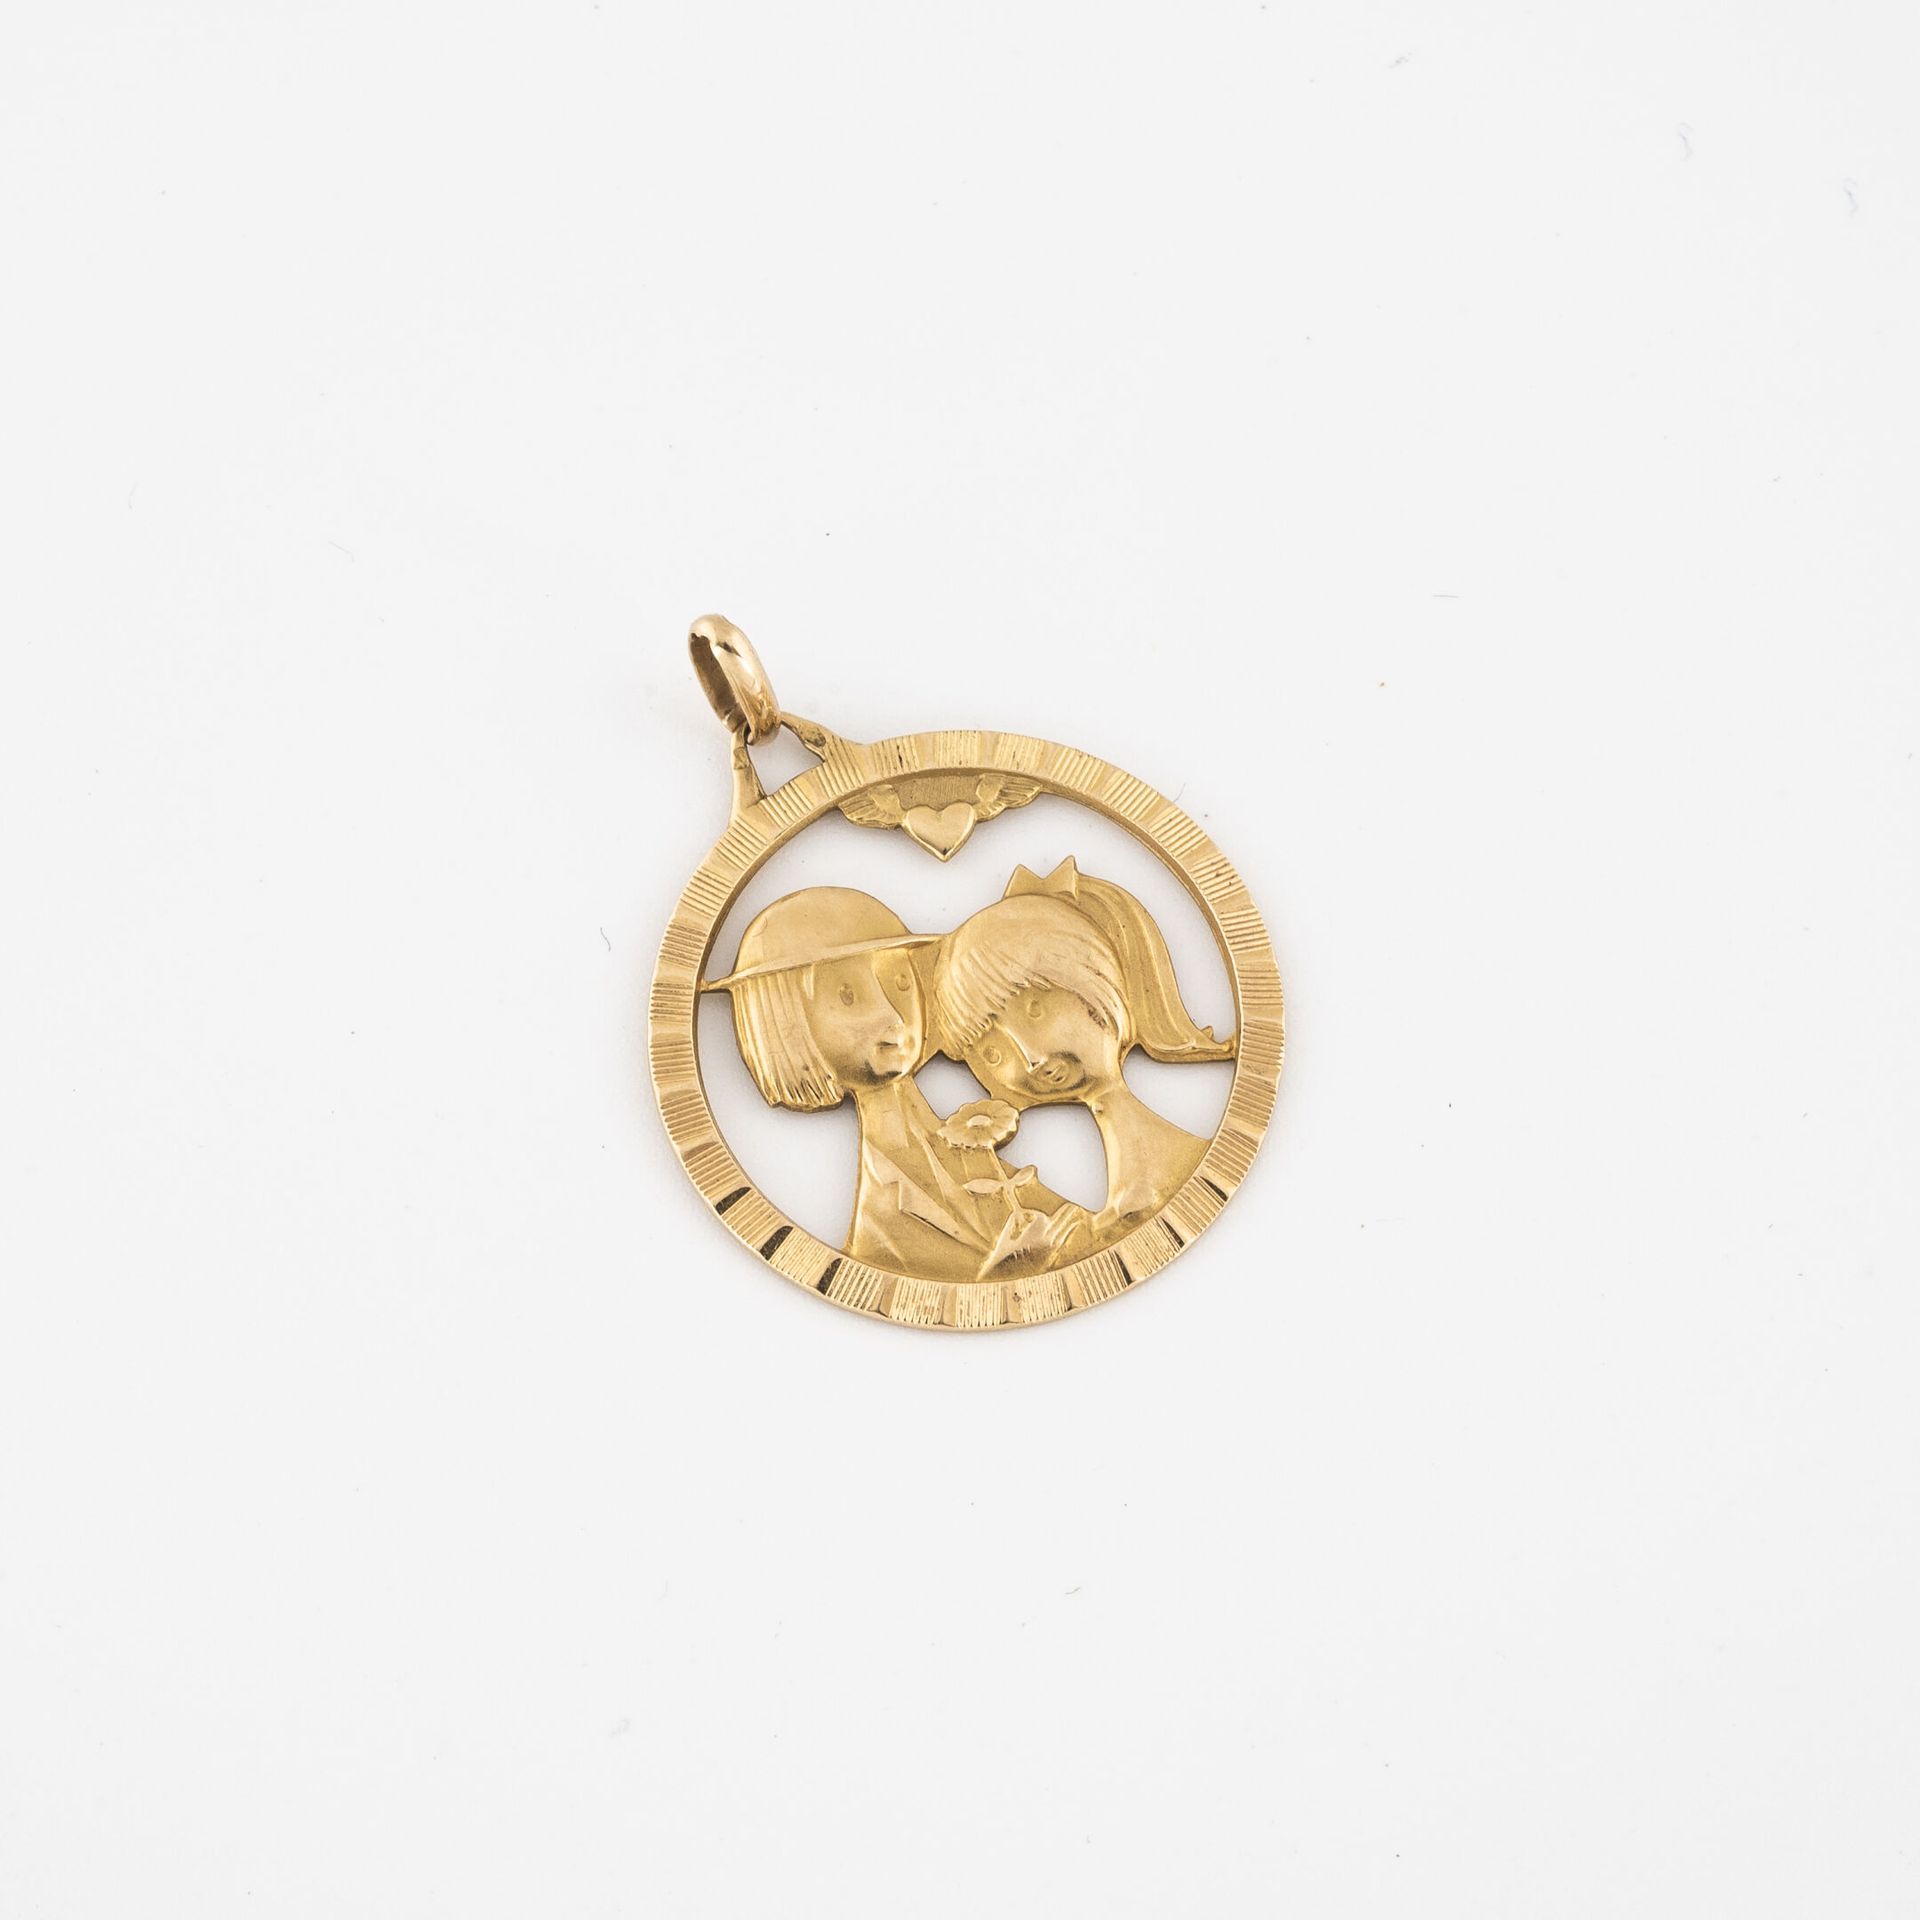 Null Kreisförmige Medaille "Les amoureux" von Peynet aus Gelbgold (750).

Gekenn&hellip;